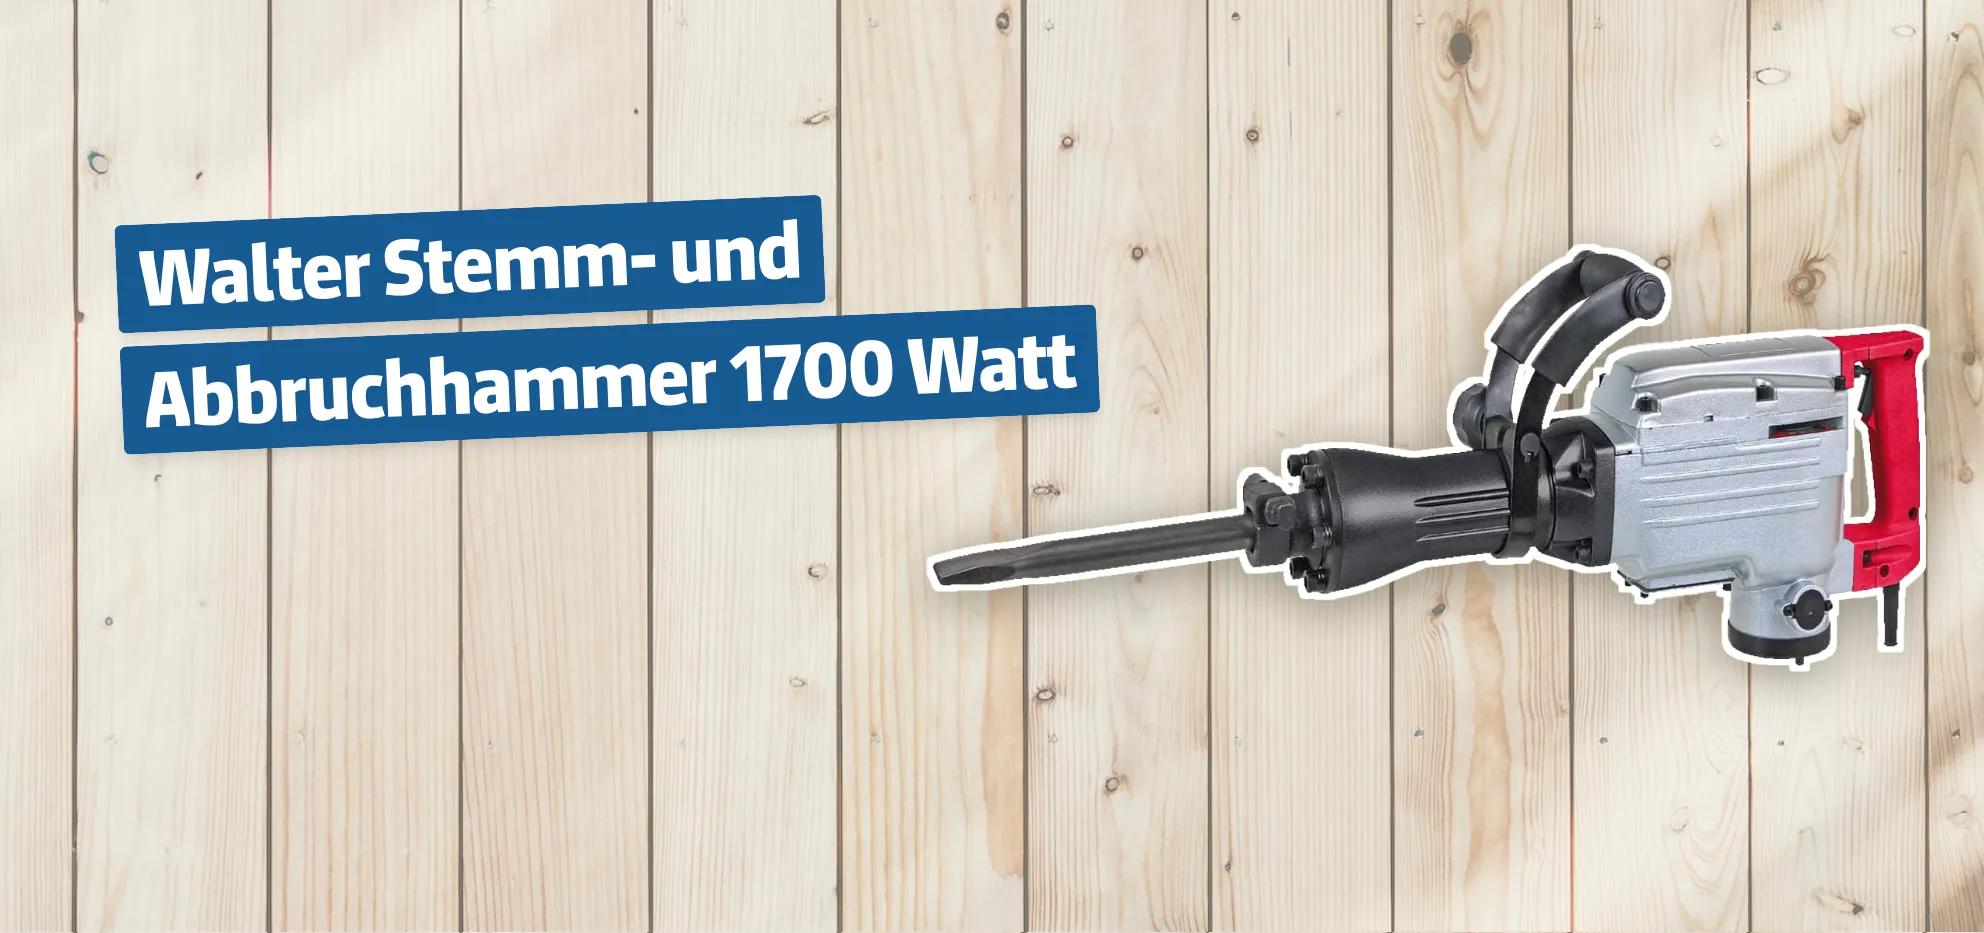 Walter Stemm- und Abbruchhammer 1700 Watt